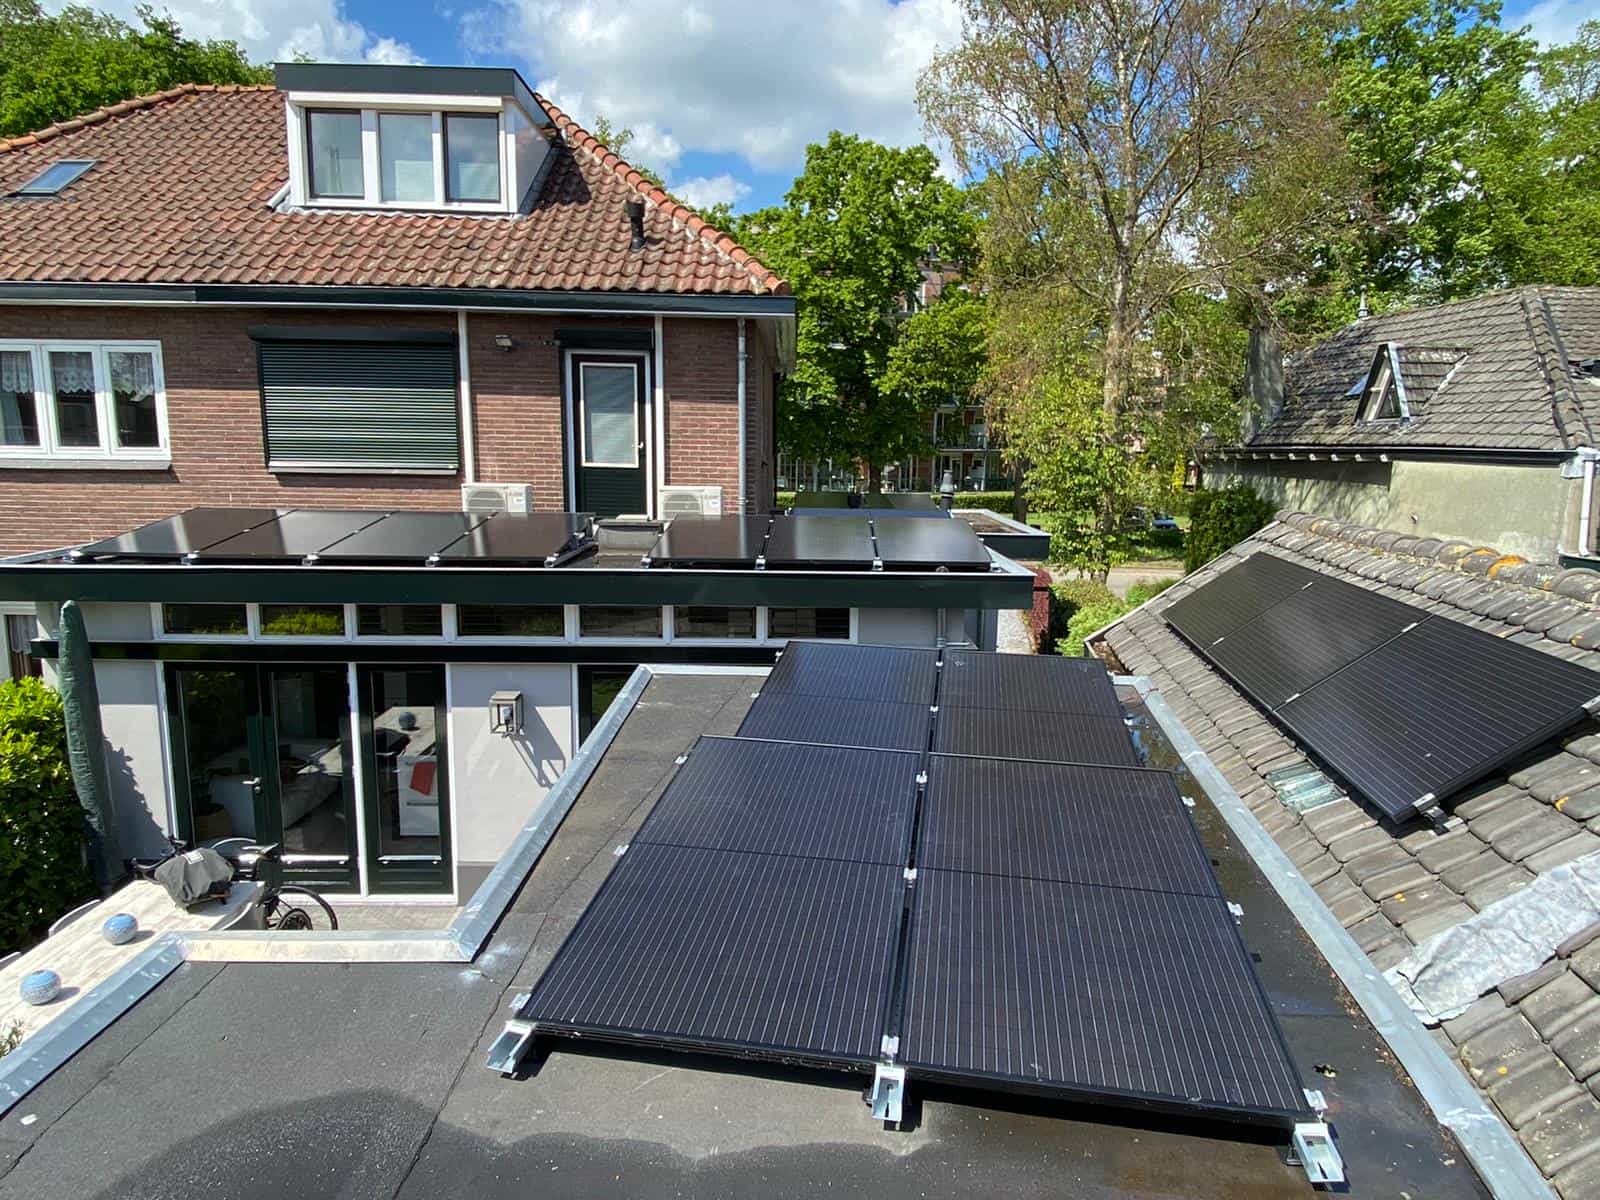 Plat dak met zonnepanelen